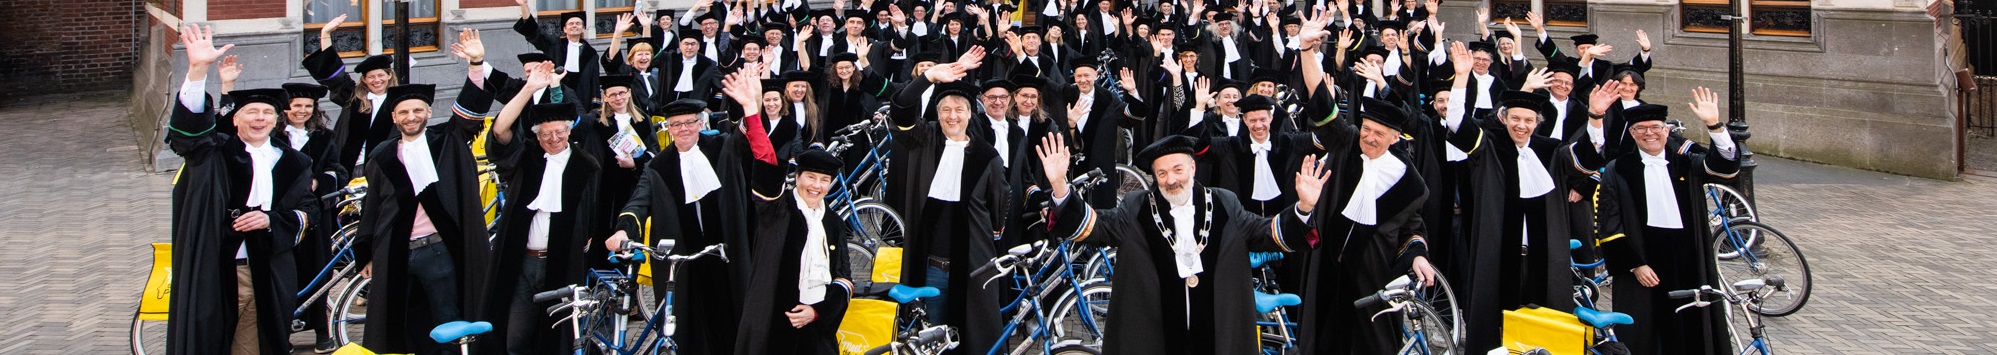 Hoogleraren poseren met hun fiets voor het Academiegebouw in Utrecht